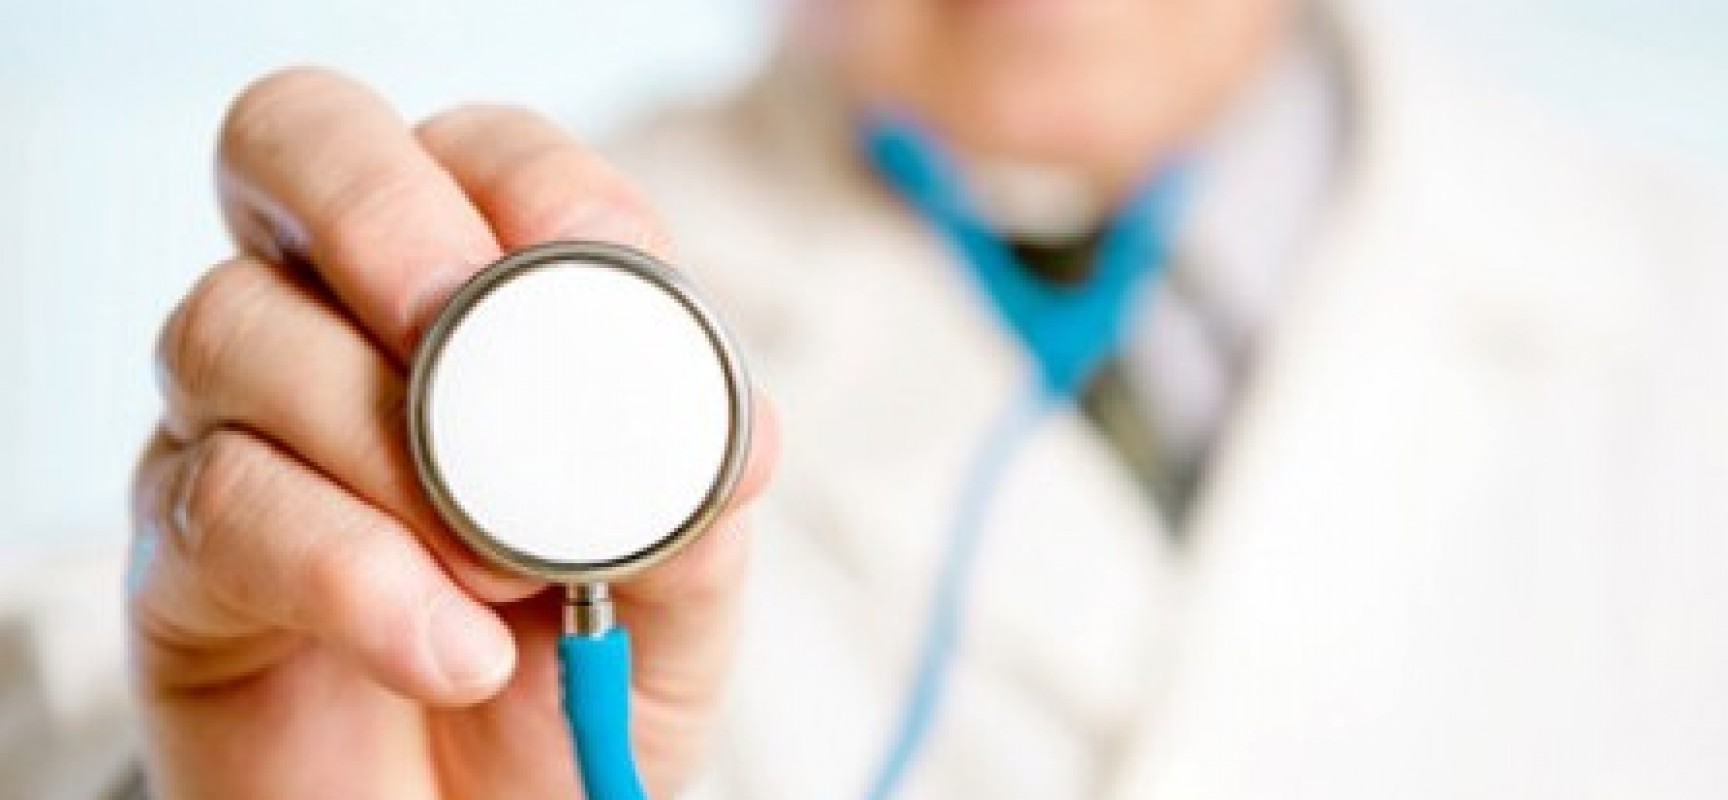 Beneficiários de planos de saúde podem consultar nível de qualidade de hospitais e clínicas